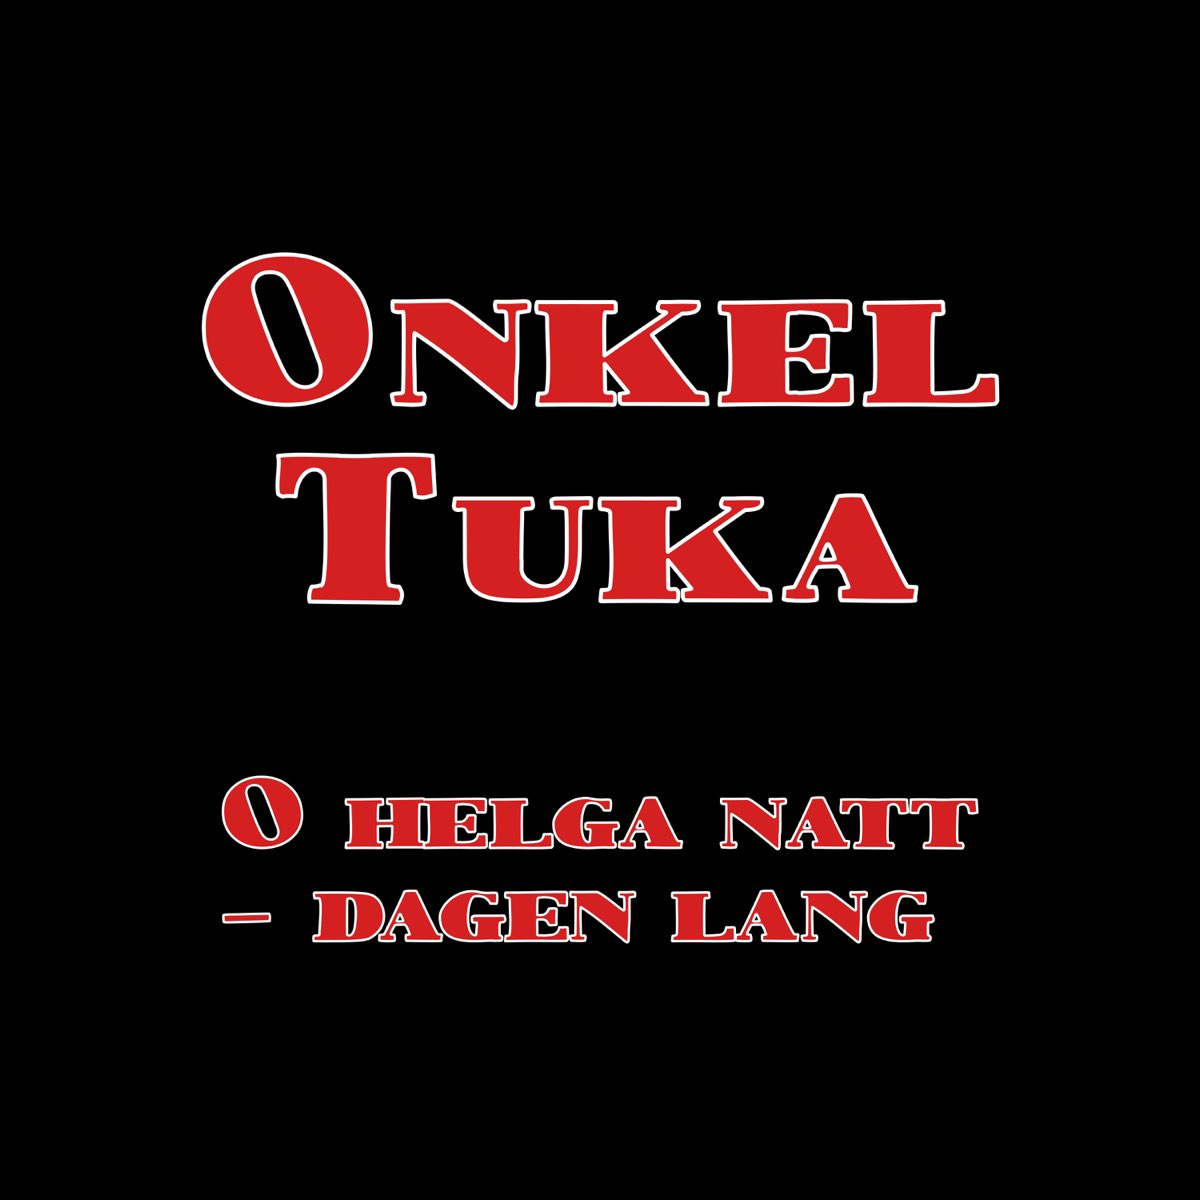 O helga natt - dagen lang - Single by Onkel Tuka on Apple Music